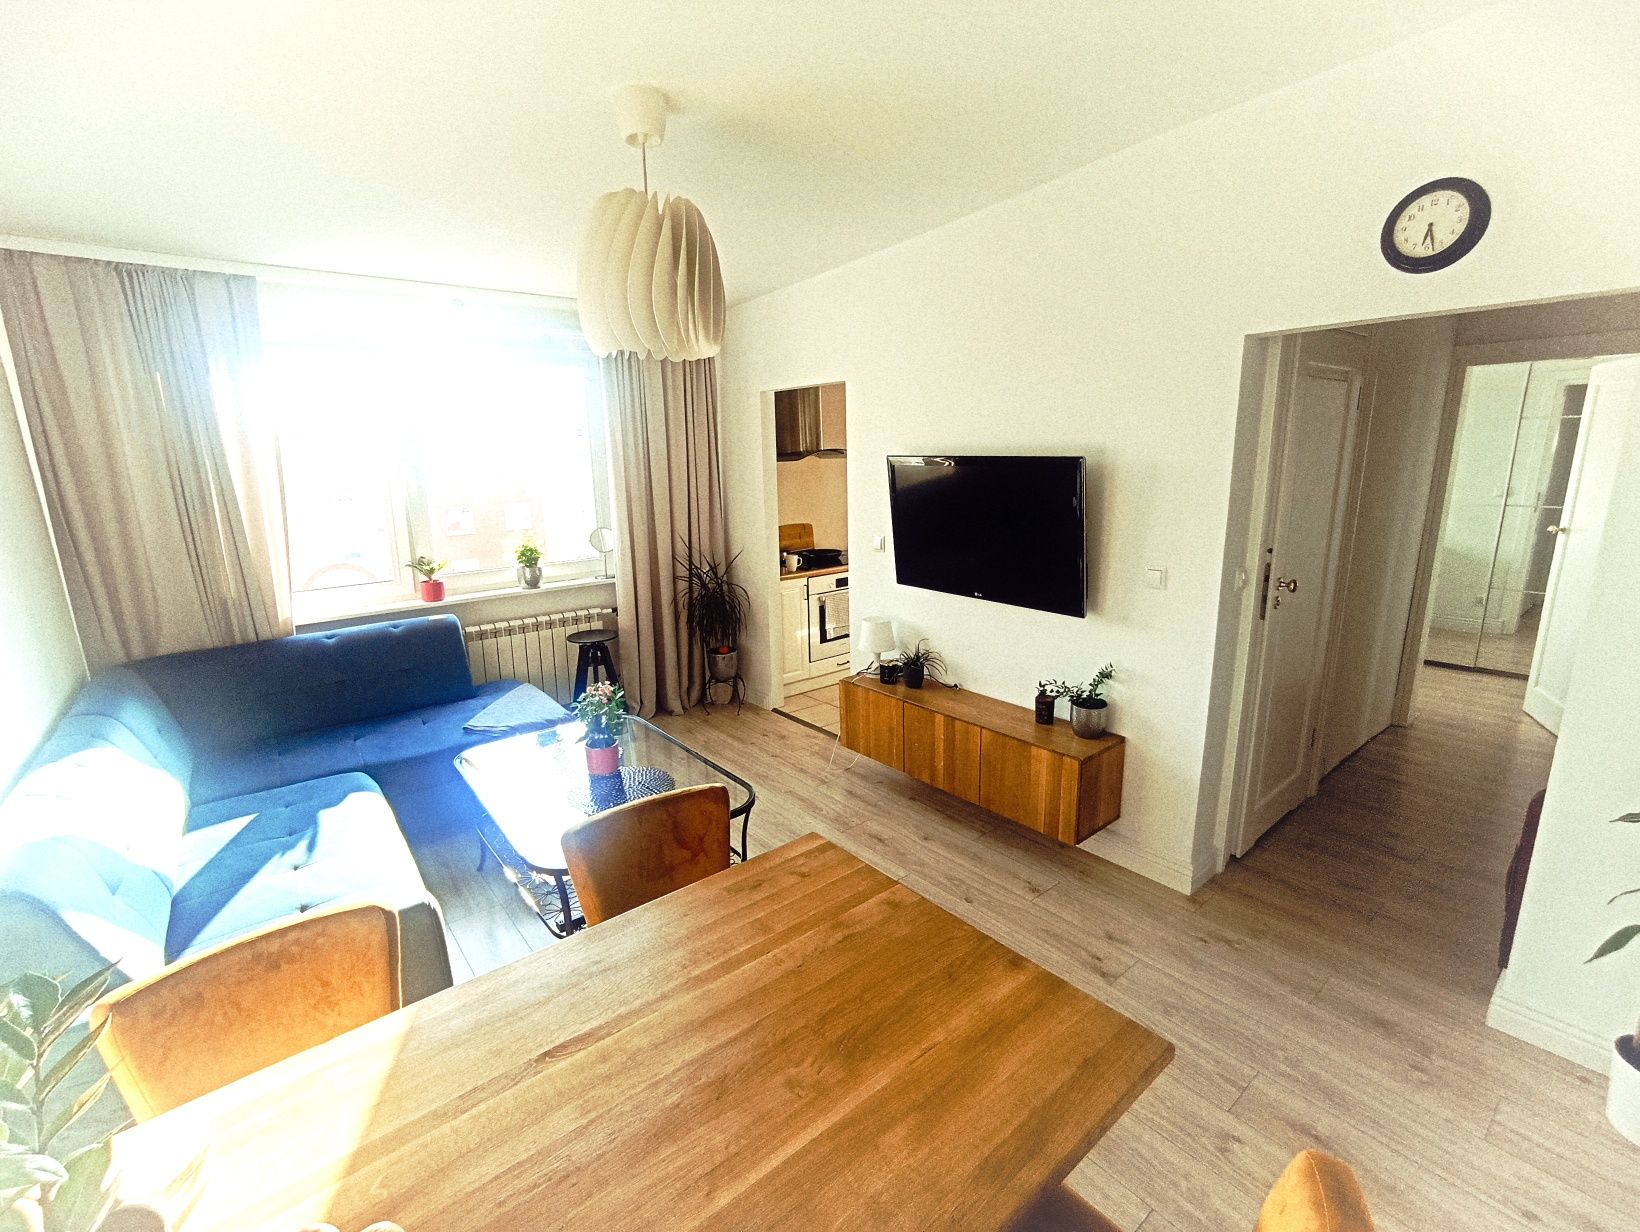 Mieszkanie plaża Gdańsk Stogi apartament 2 pokoje, morze